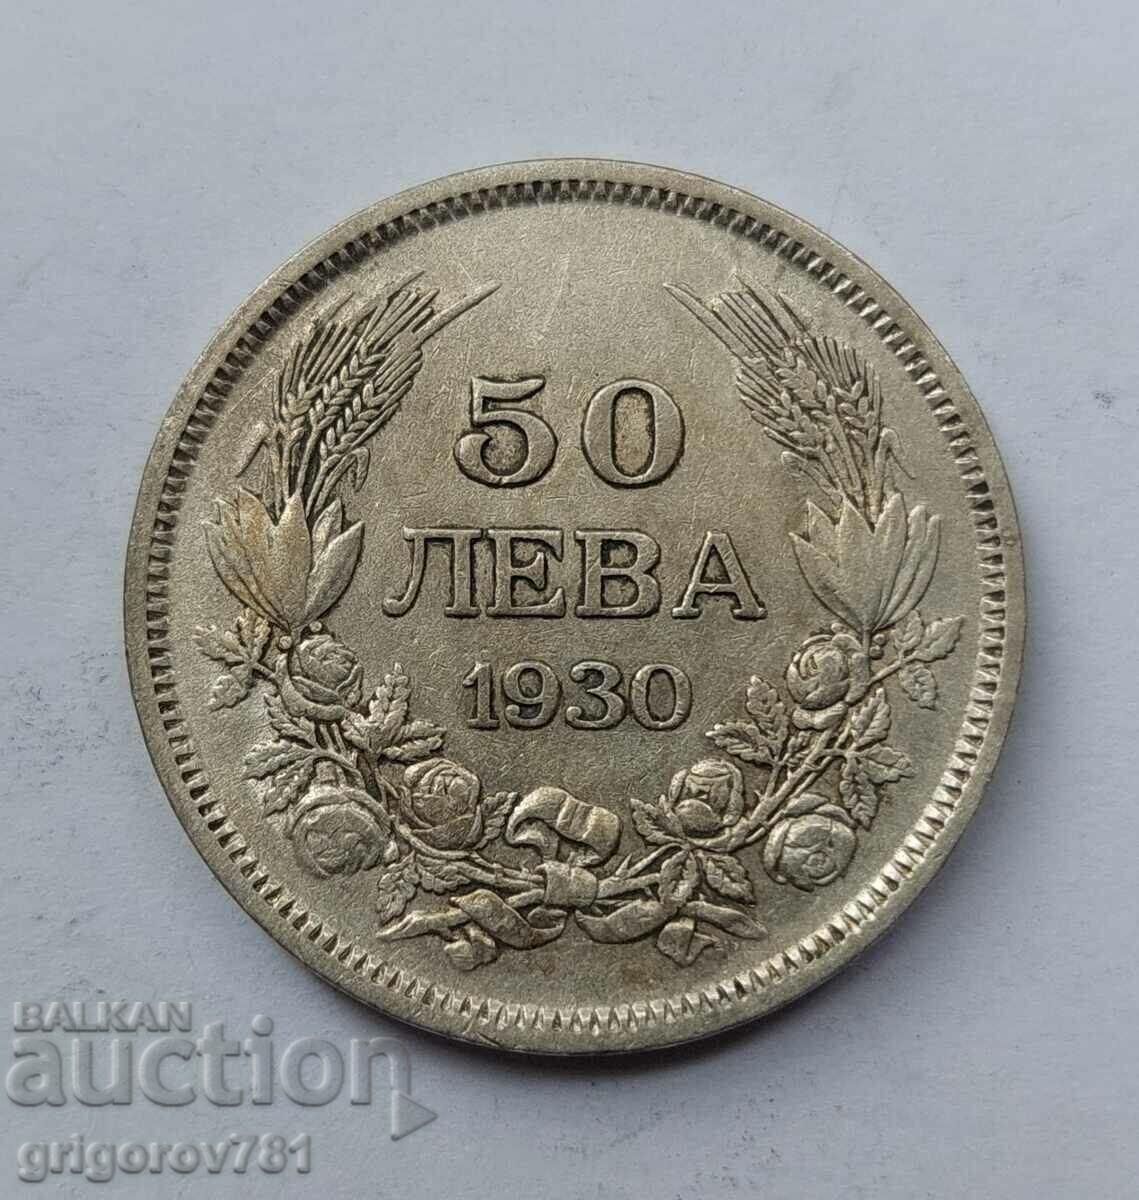 Ασήμι 50 λέβα Βουλγαρία 1930 - ασημένιο νόμισμα #87